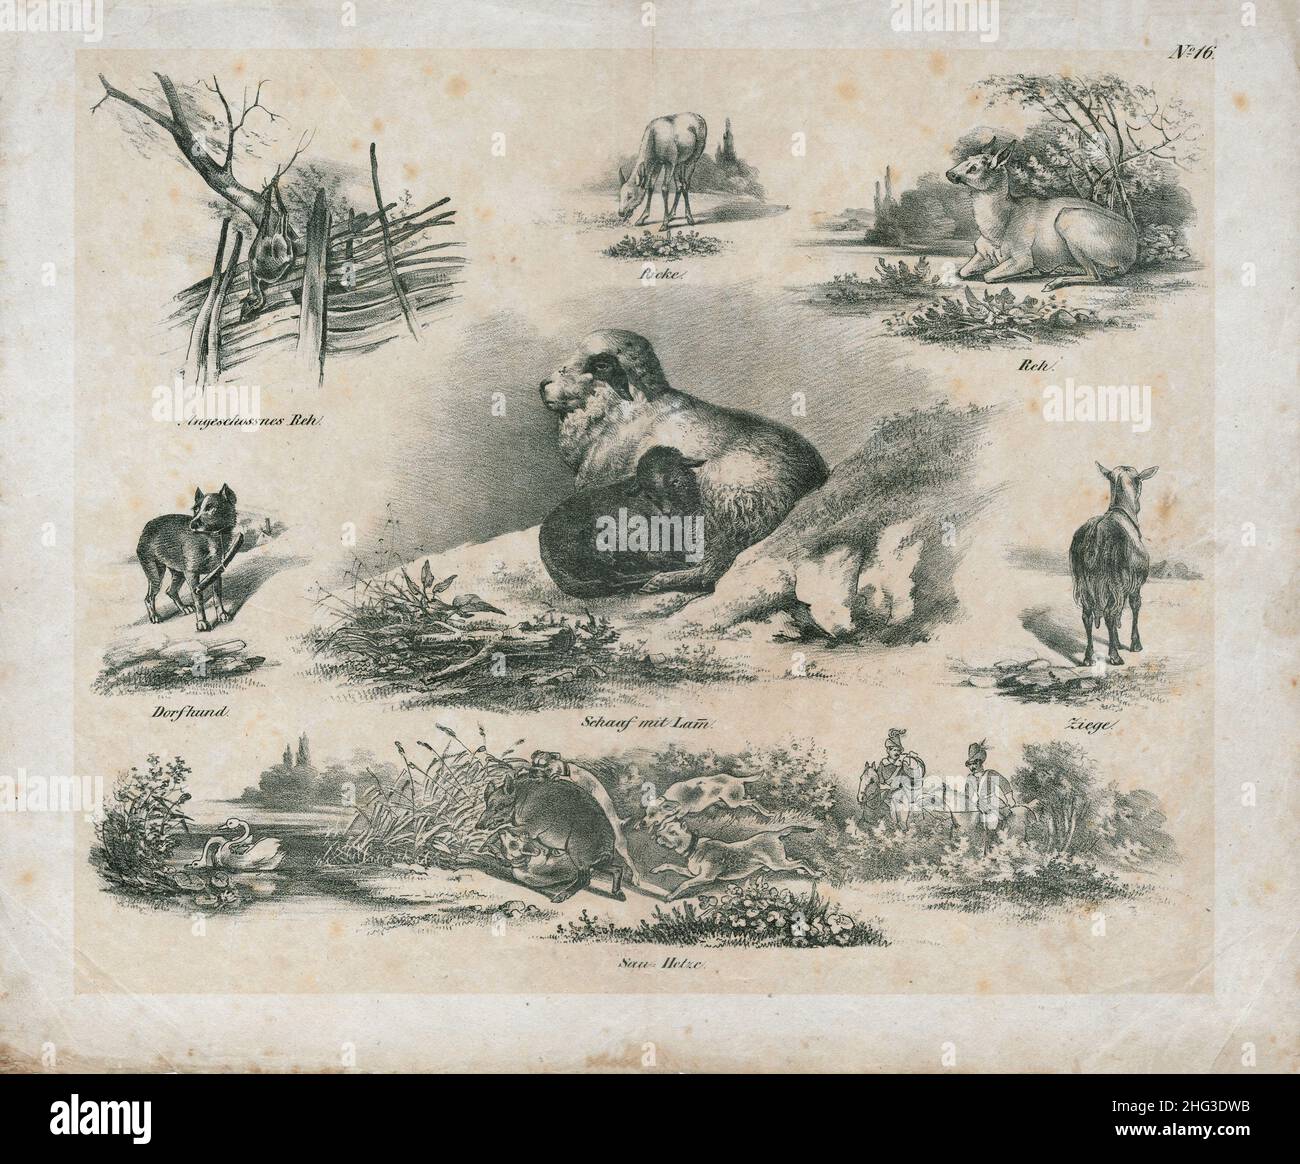 Le illustrazioni vintage del 19th secolo di animali domestici e selvaggi. Tedesco, 1850 schizzi di campagna di un cacciatore tedesco del 19th secolo. Foto Stock